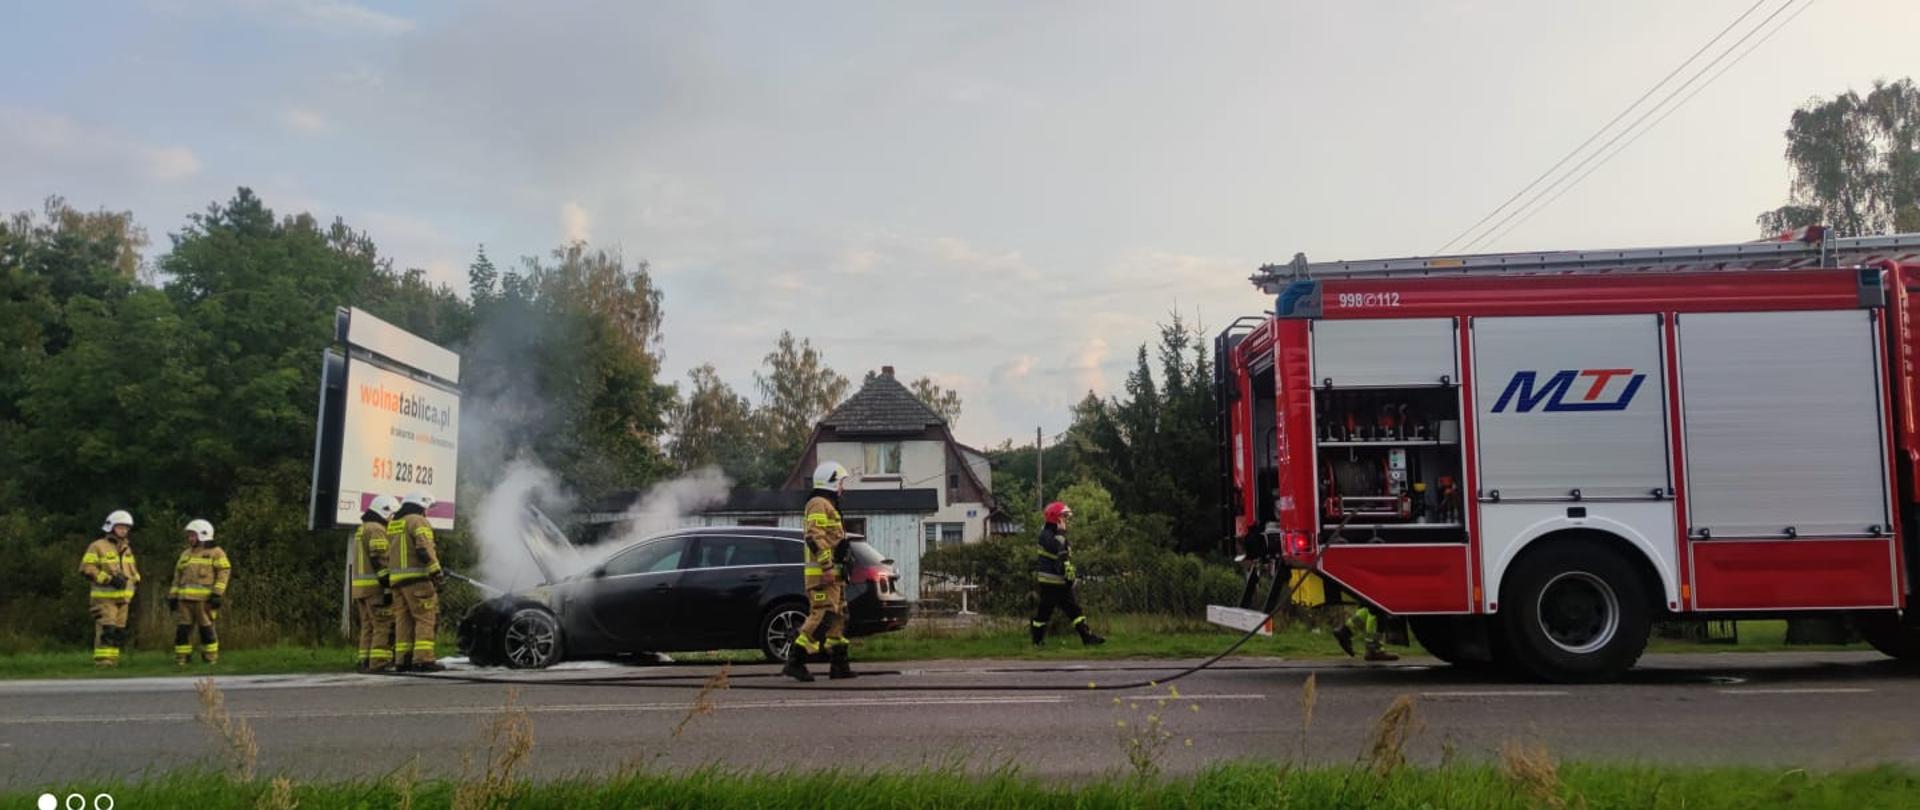 Strażak podaje prąd piany gaśniczej do komory silnika czarnego samochodu. po prawej samochód pożarniczy.